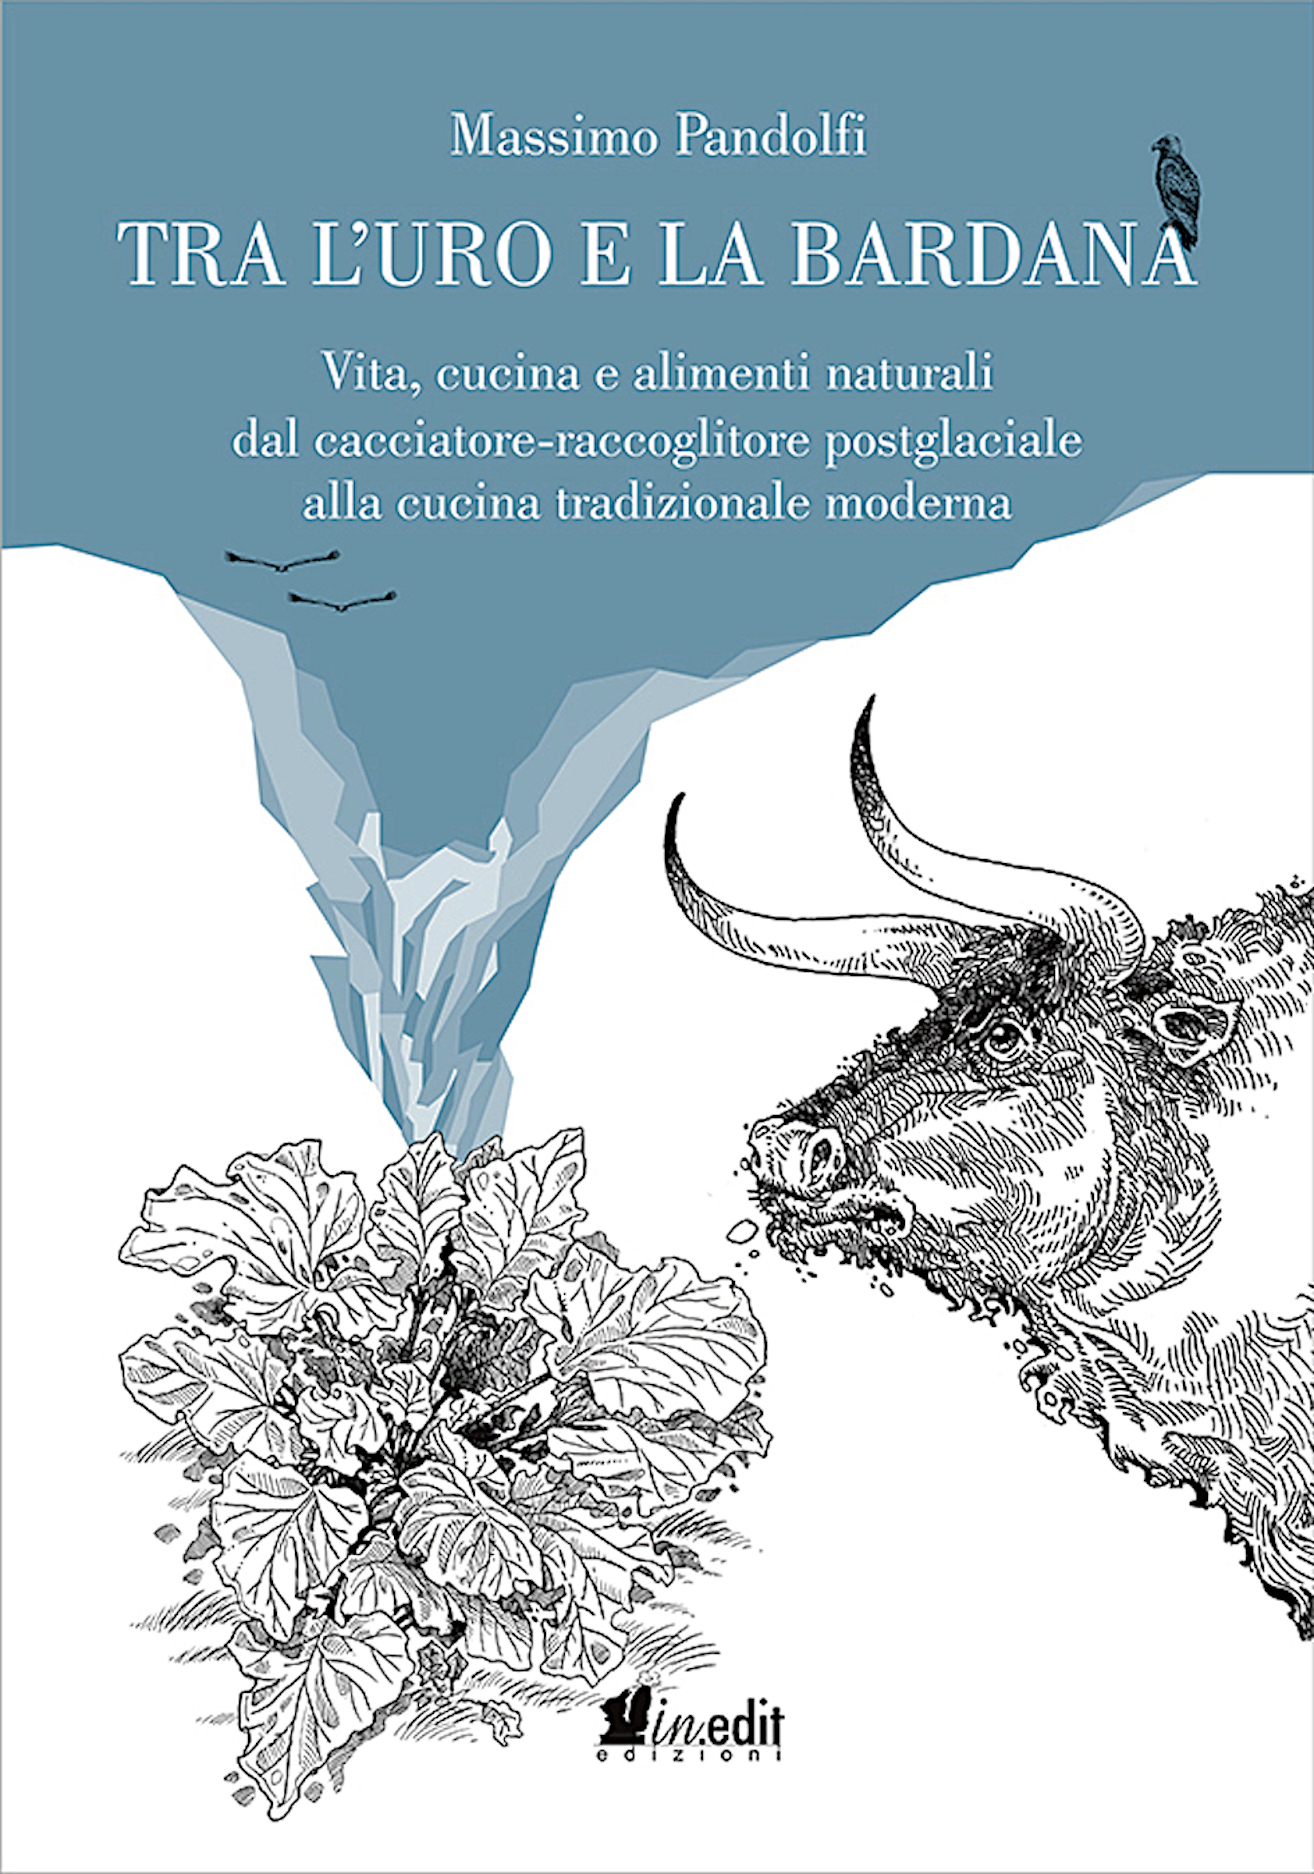 Libri&Editoria. Pesaro: presentazione del libro di Massimo Pandolfi, “Tra L’Uro e la Bardana”